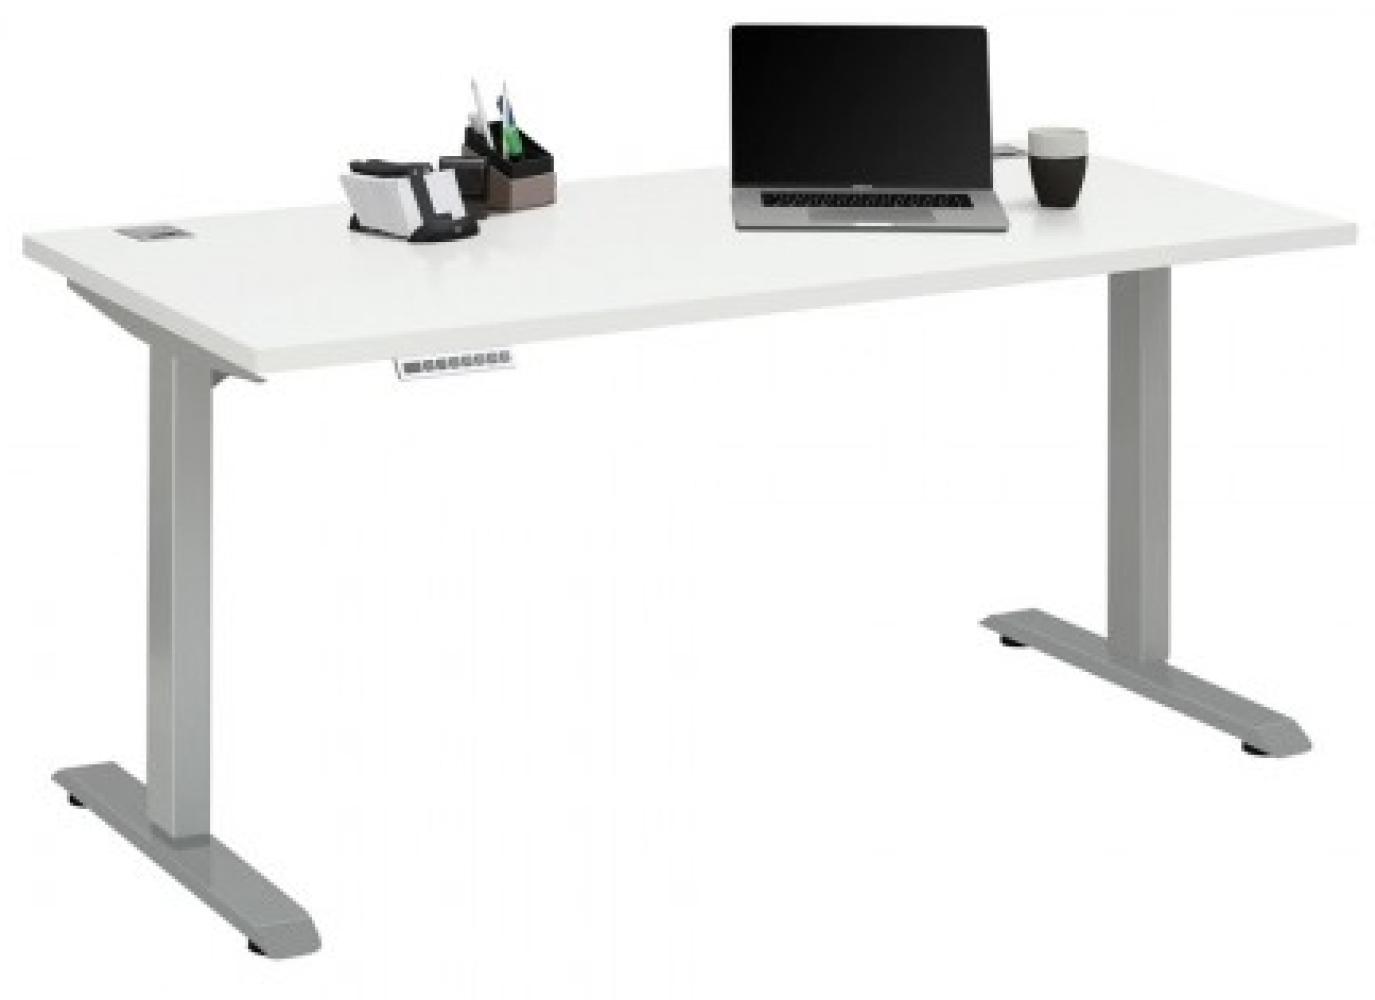 Maja Höhenverstellbarer Schreibtisch 5504 Metall platingrau - weiß matt Bild 1